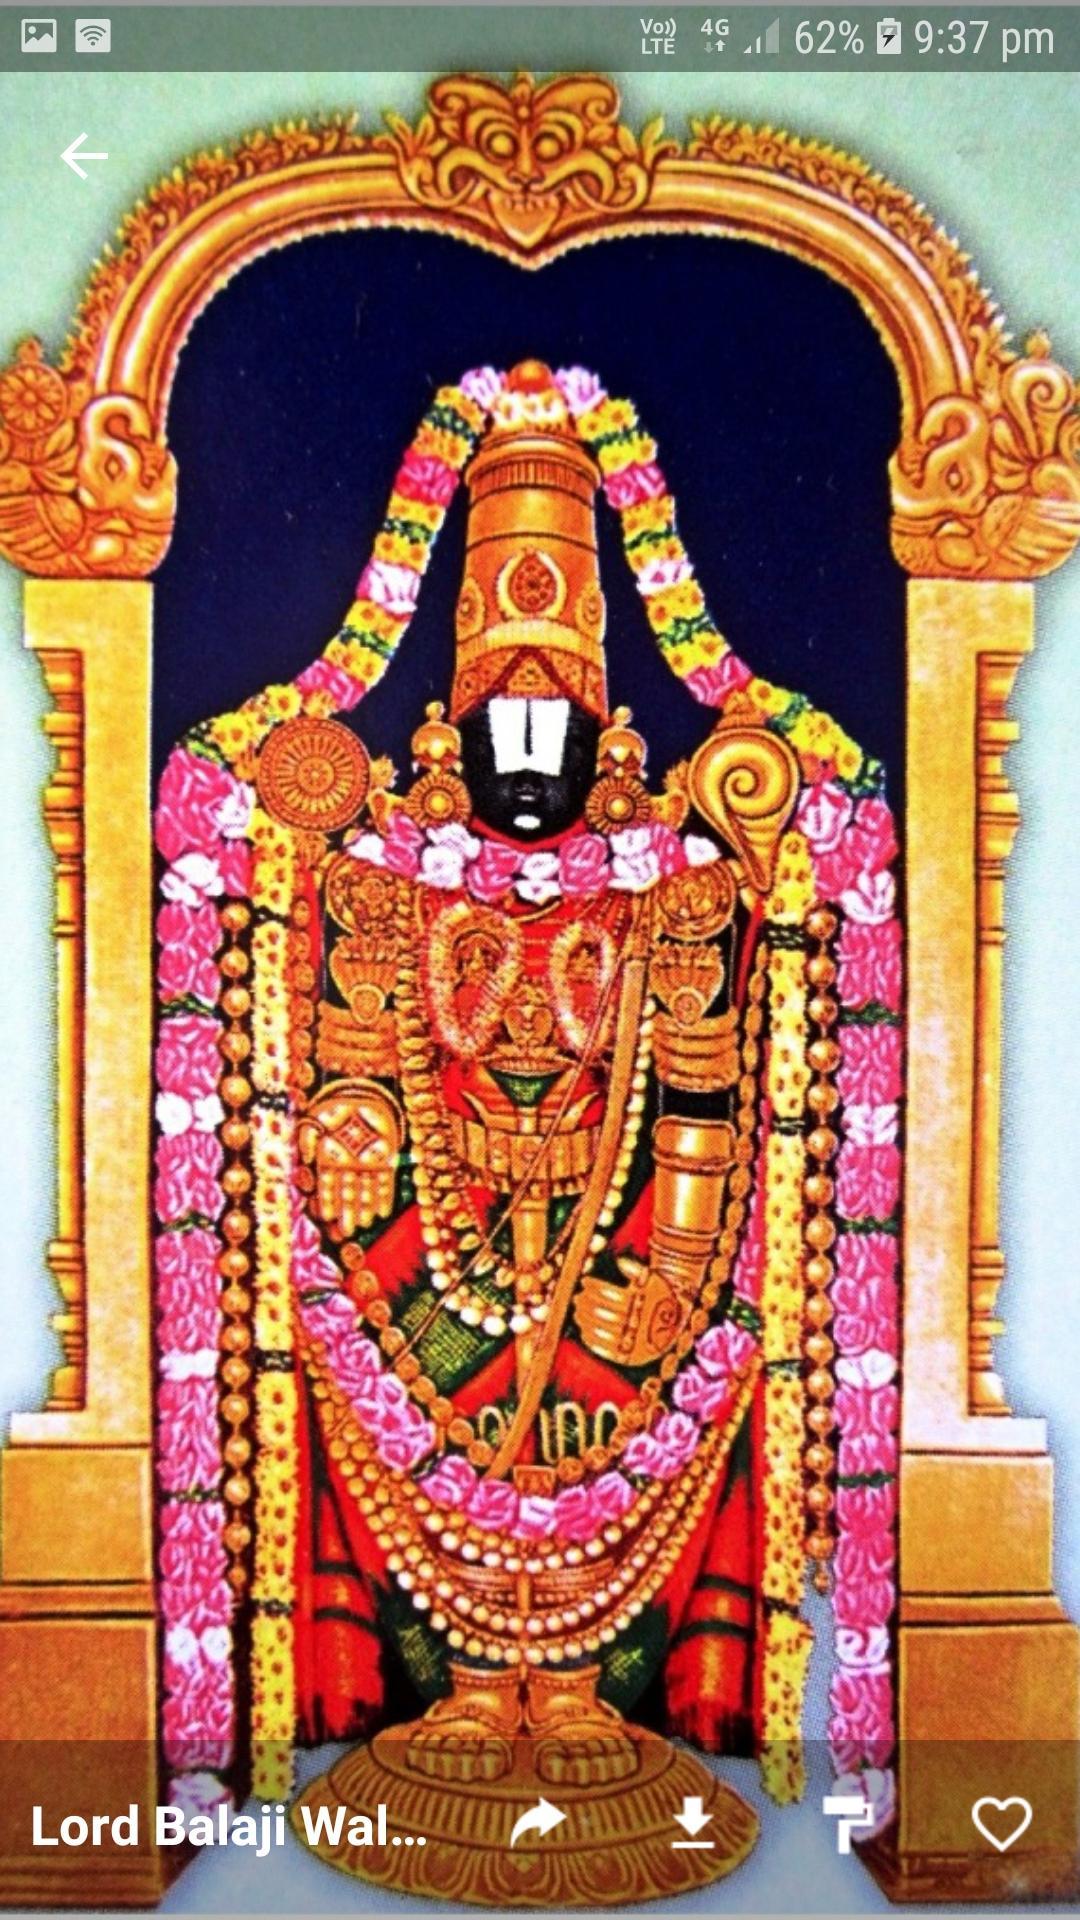 Tirupati Balaji Lord Venkateswara Hd Wallpapers For Android Apk Download